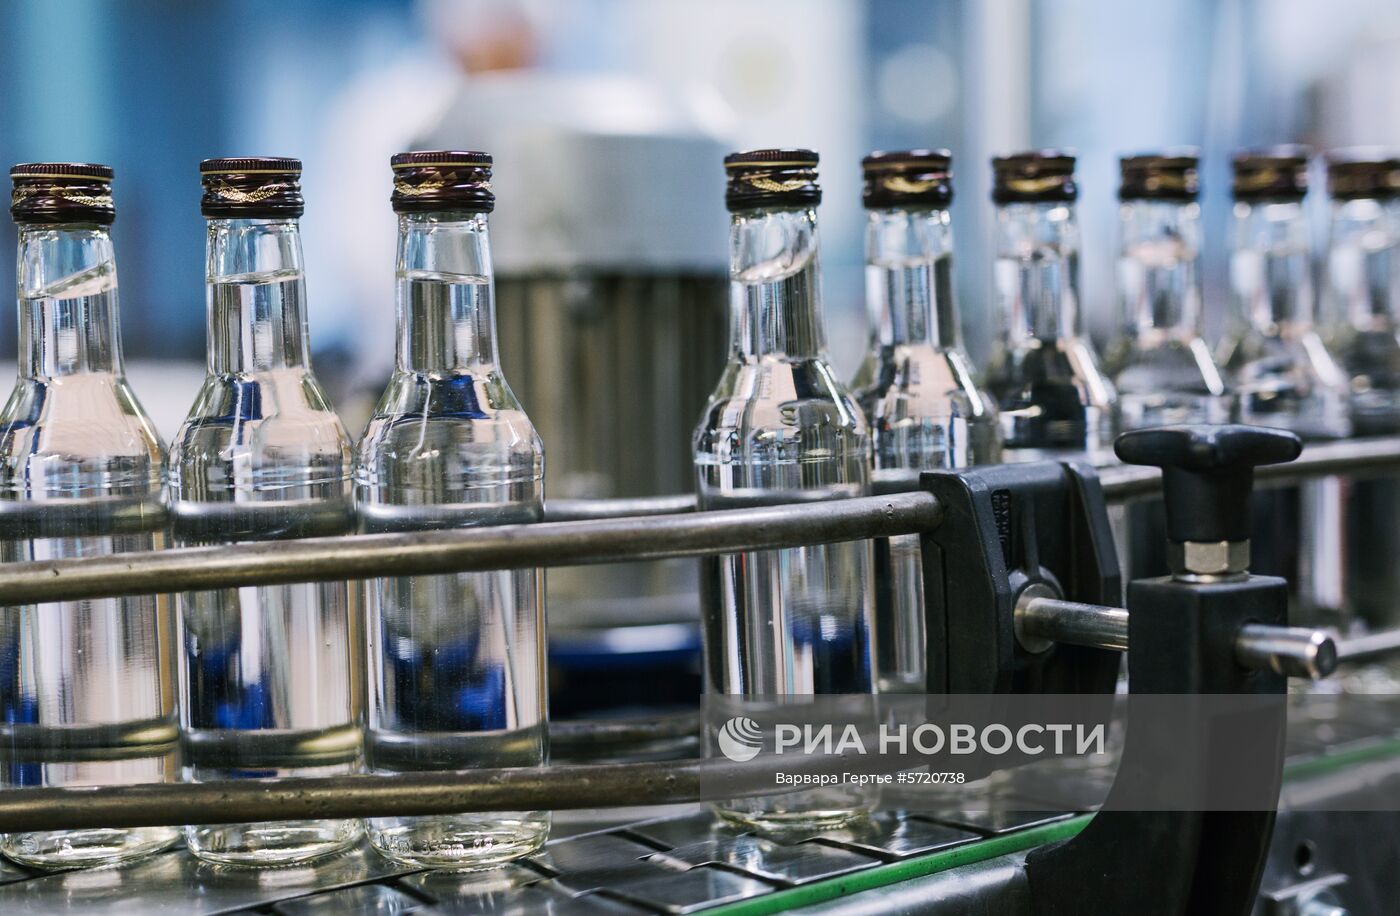 Производство водки в Ивановской области